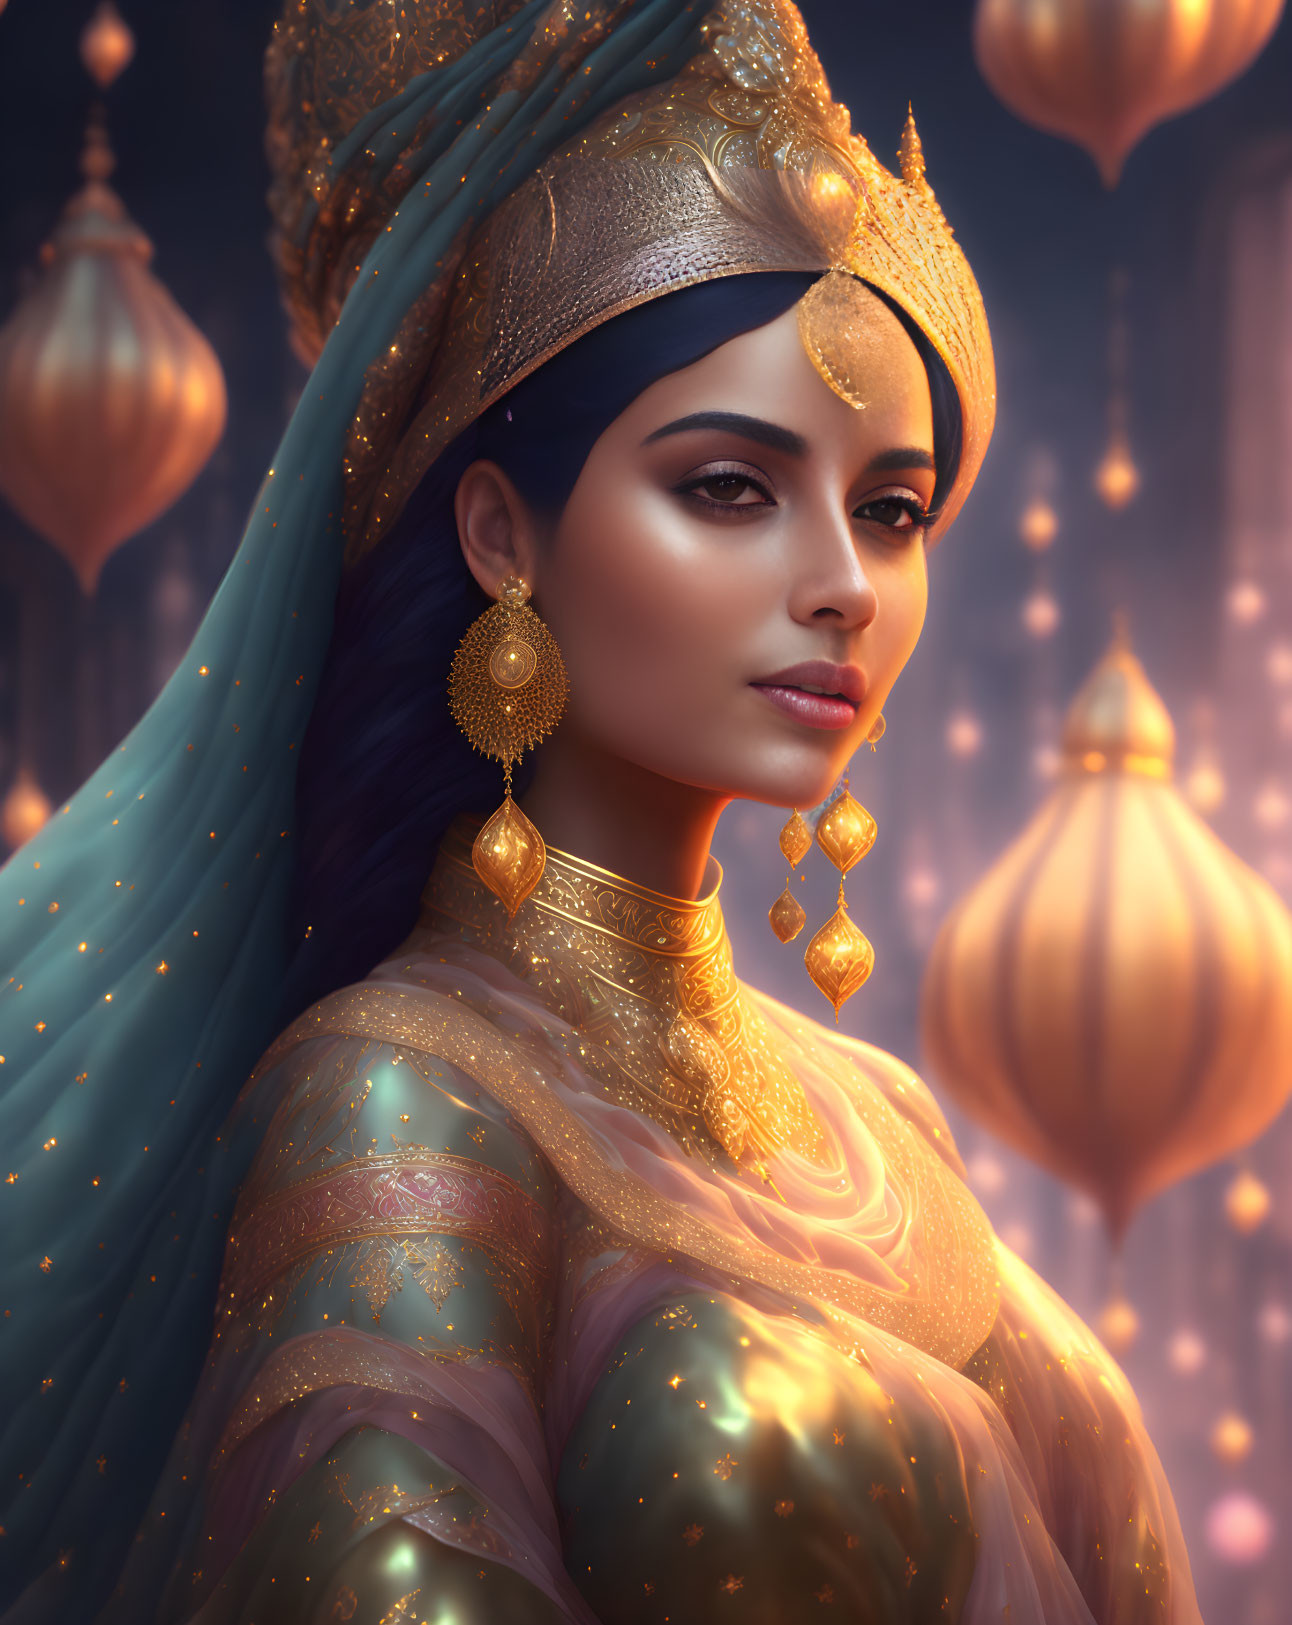 Arabian princess